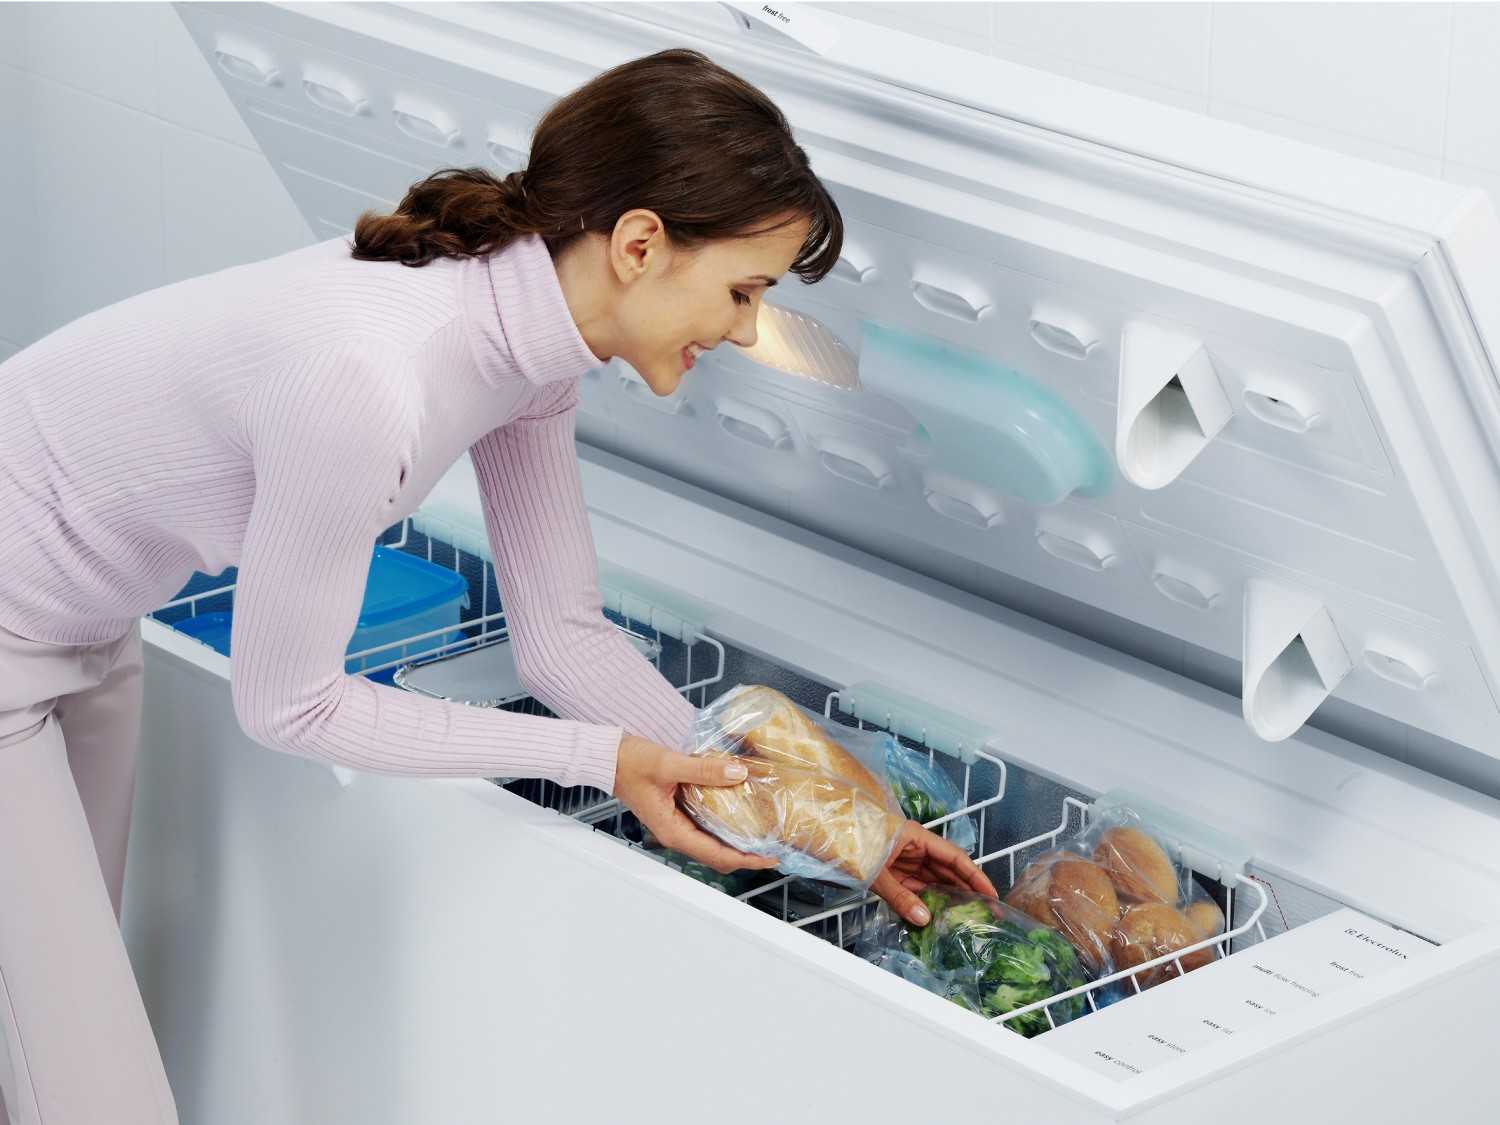 Ratgeber Der Frühjahrsputz steht an: So arbeiten auch Kühlschrank, Waschmaschine und Co. zuverlässig - News, Bild 1